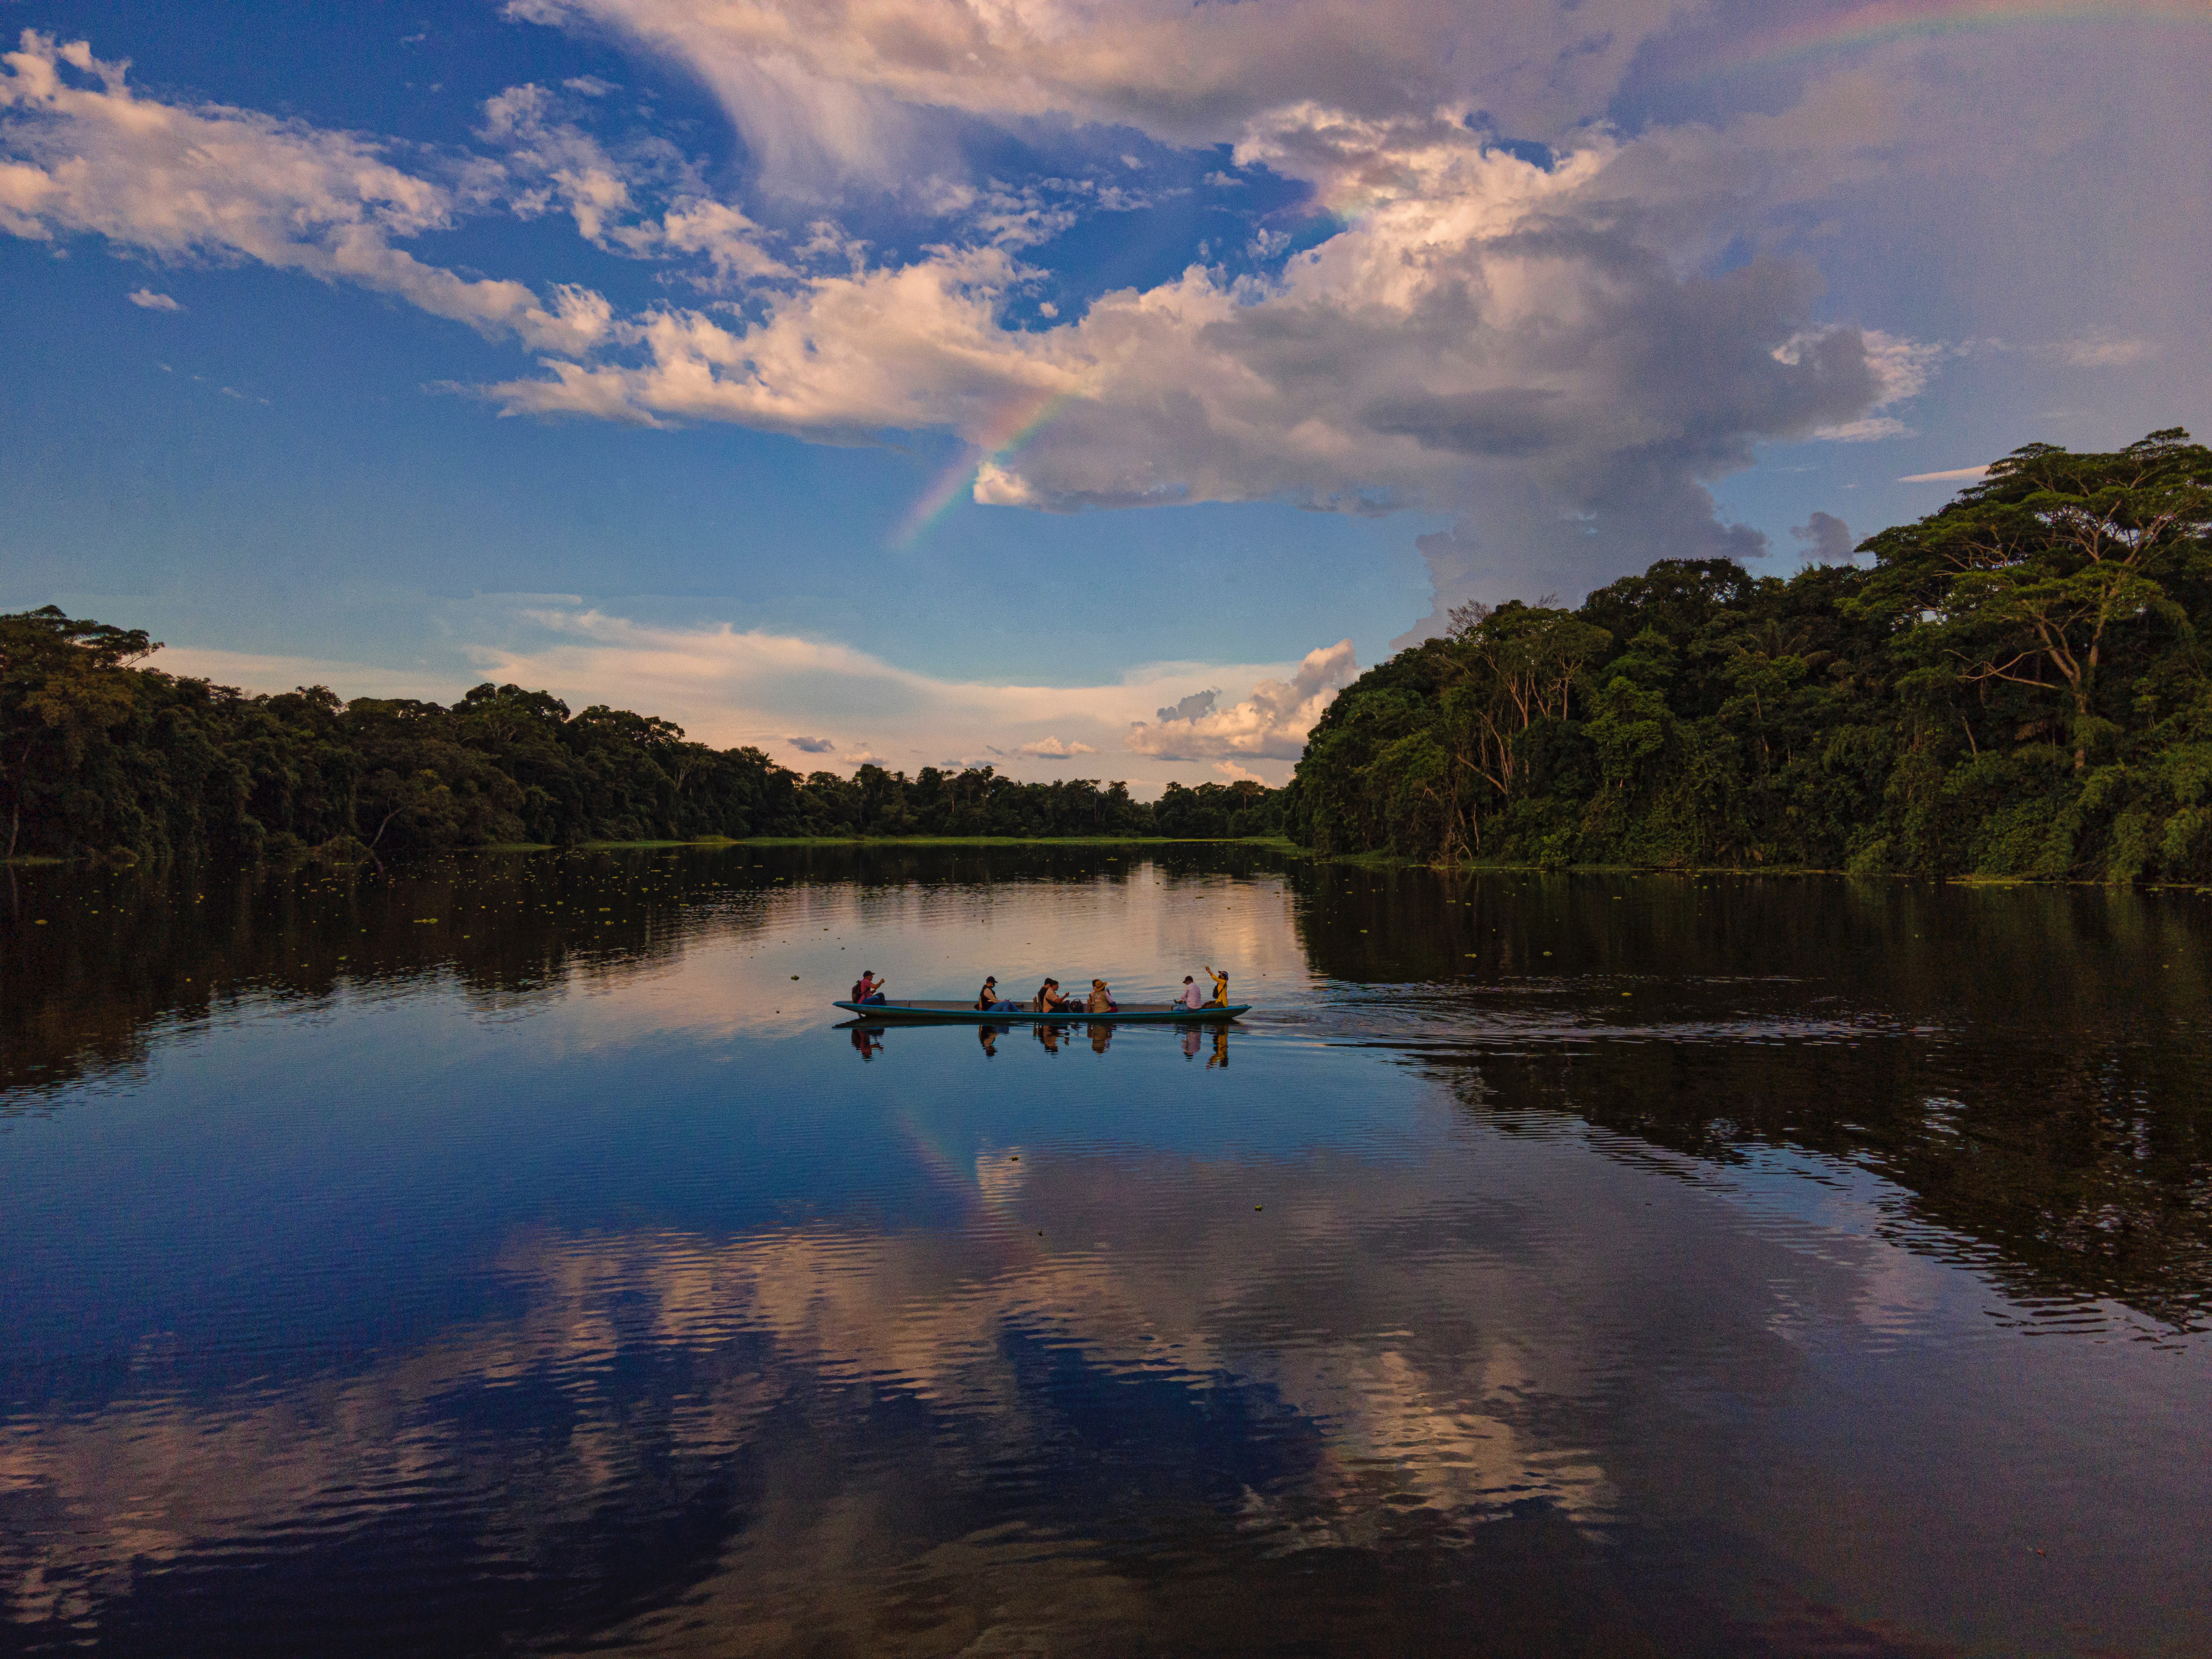 A canoe crosses a body of water in Ecuador beneath a blue sky.